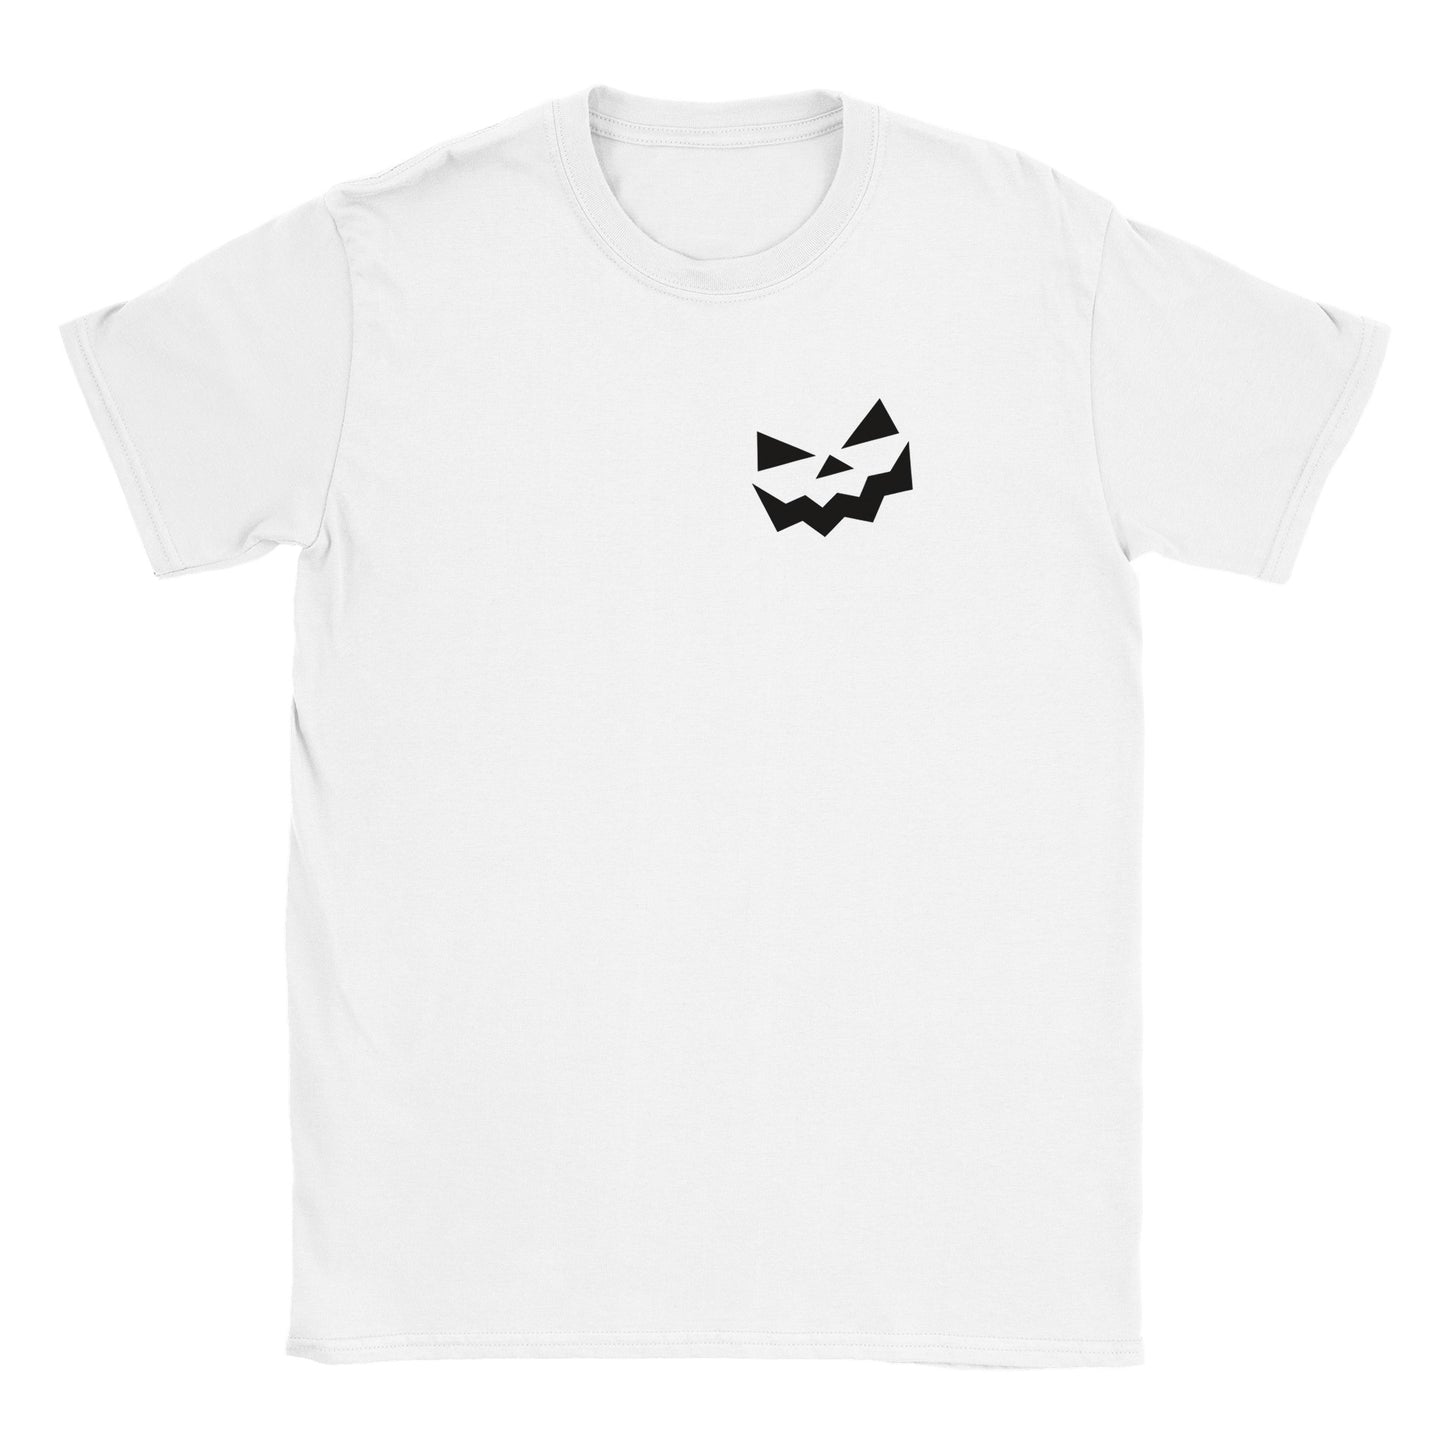 Jack O' Lantern - Classic Unisex Crewneck T-shirt